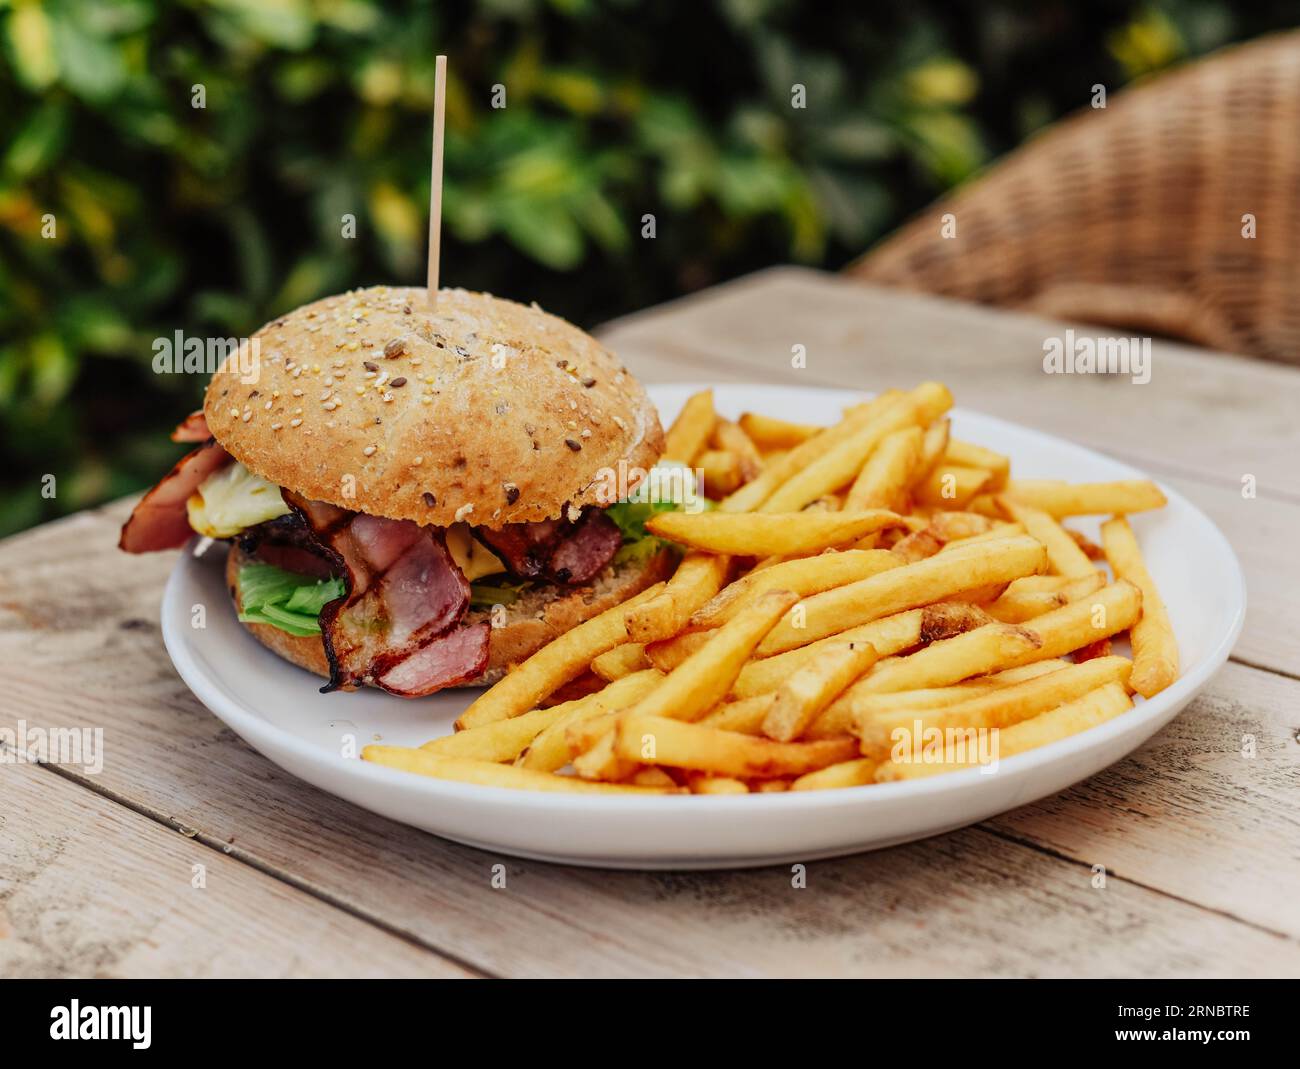 Plat américain classique de cheeseburger avec frites Banque D'Images